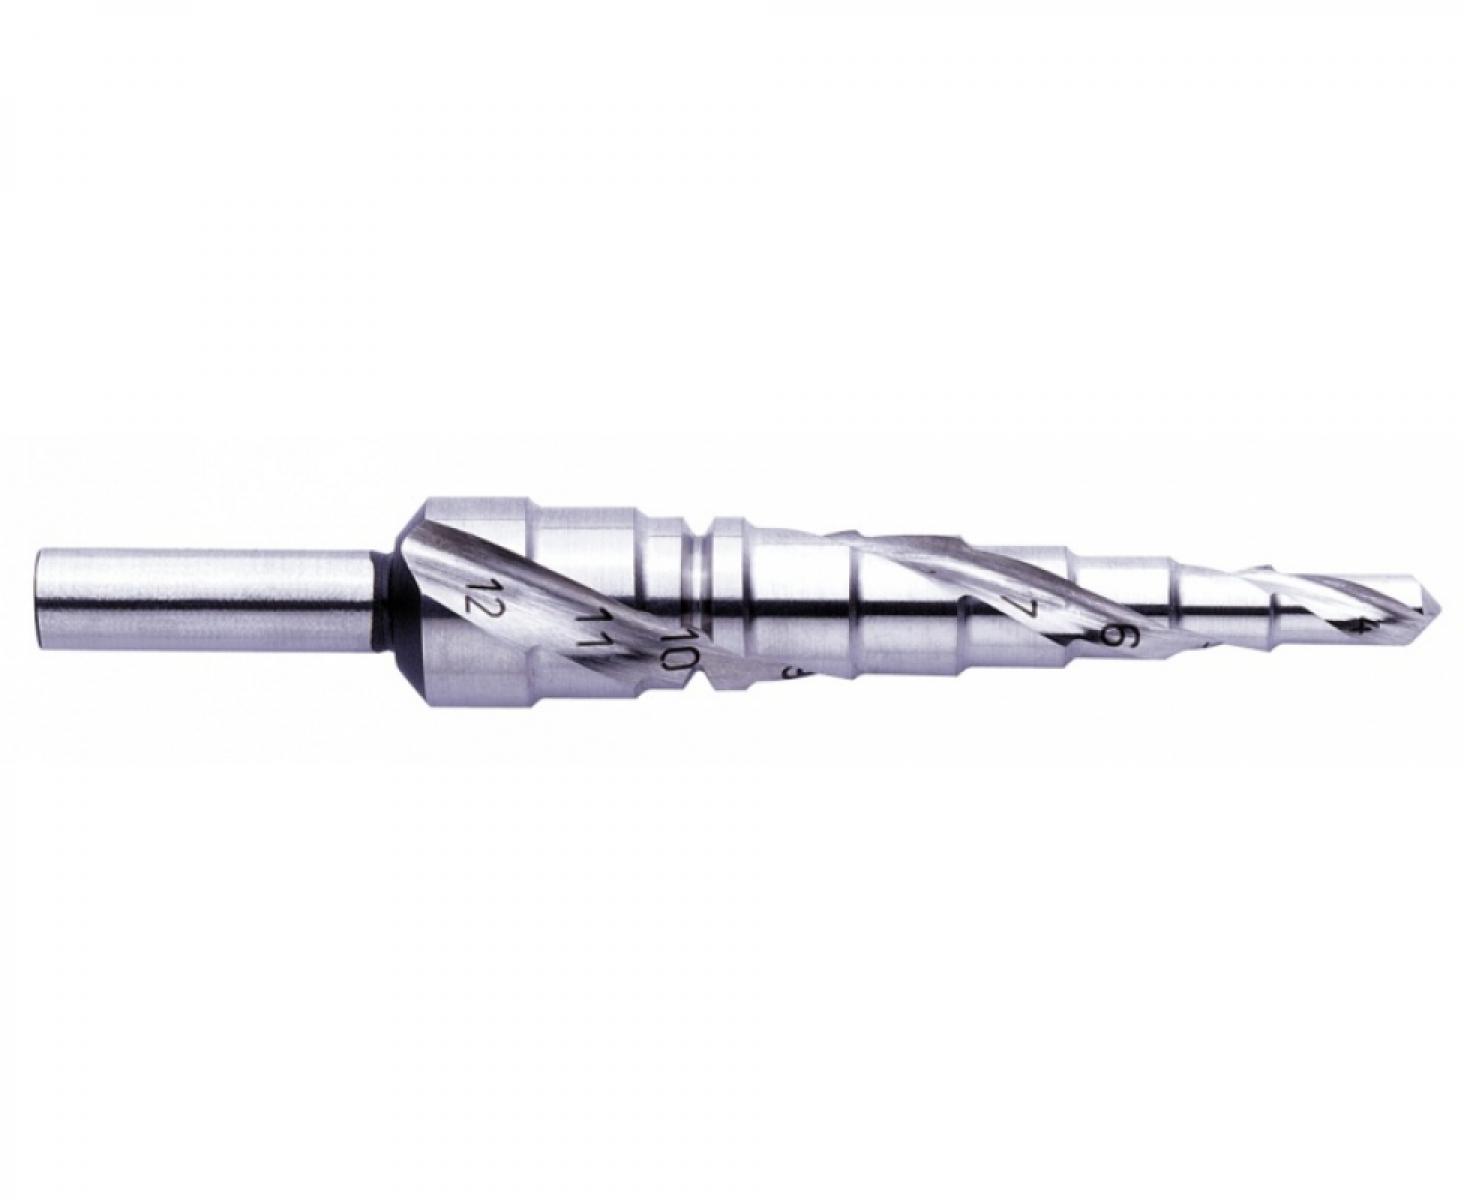 Сверло ступенчатое по металлу со спиральной канавкой 4 - 12 мм Exact GQ-07001 трехопорный хвостовик RotaStop